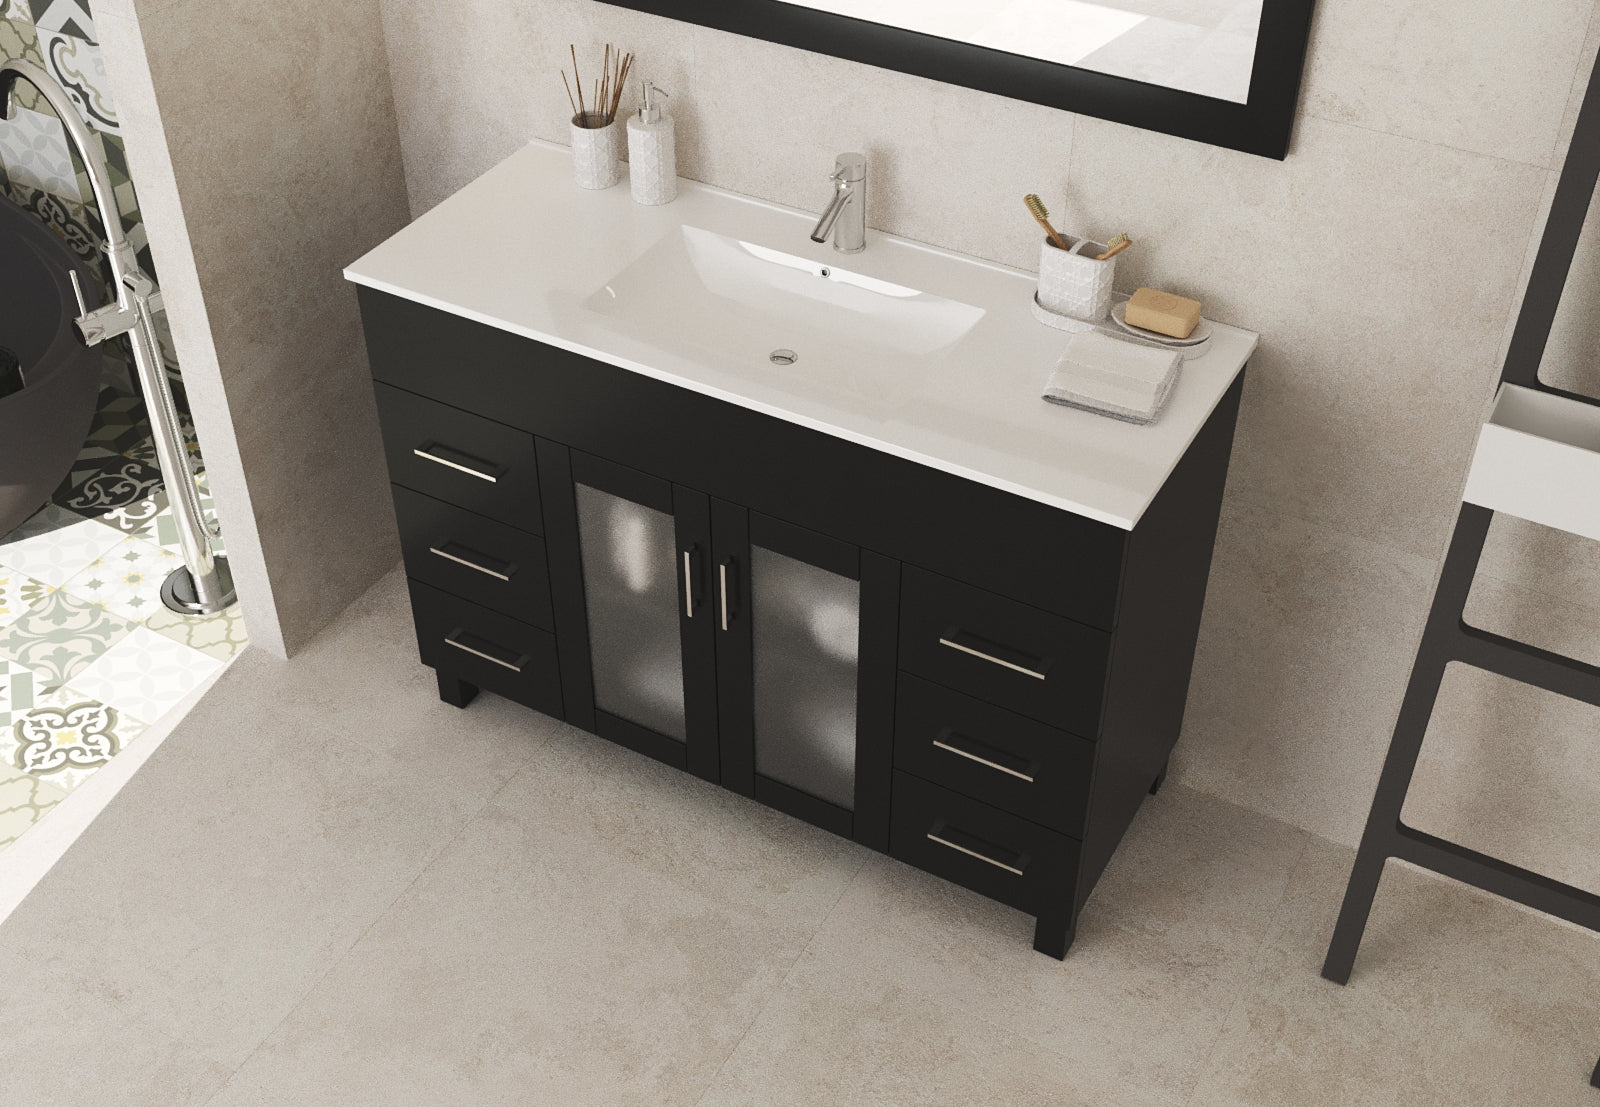 Laviva Nova 48" Espresso Bathroom Vanity with White Ceramic Basin Countertop | 31321529-48E-CB